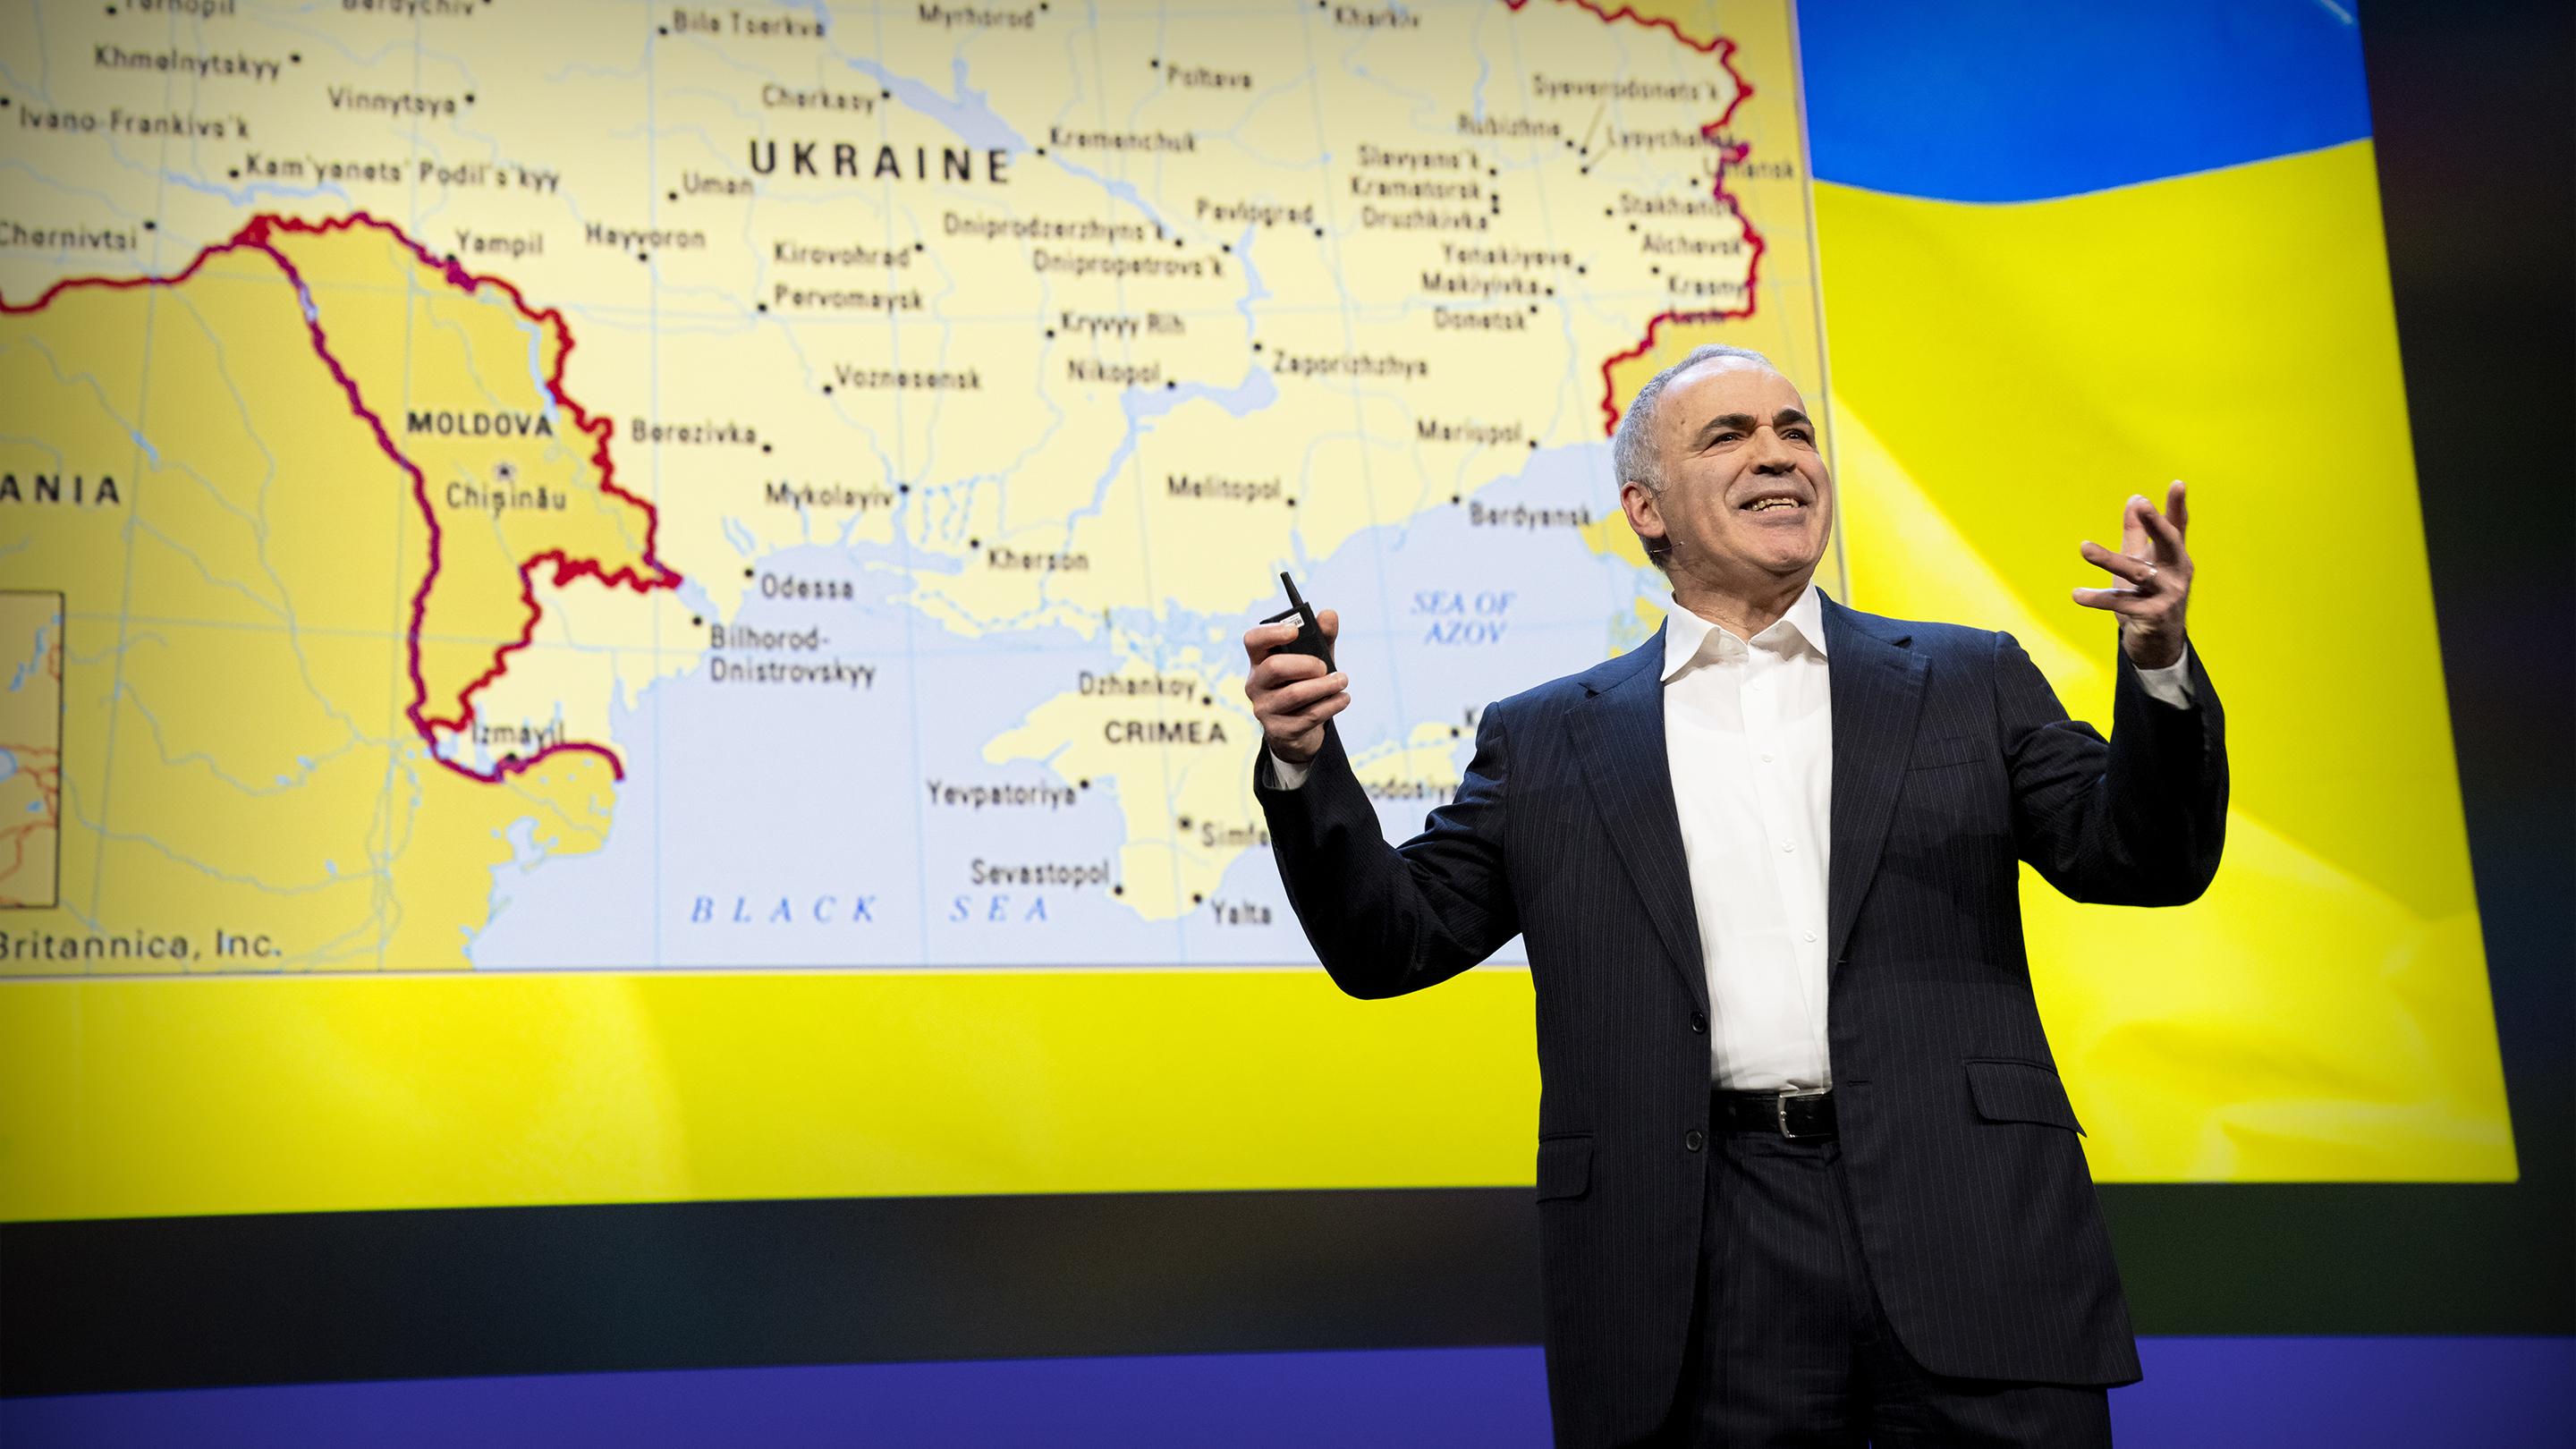 Ensemble avec l’Ukraine dans sa lutte contre le mal | Garry Kasparov